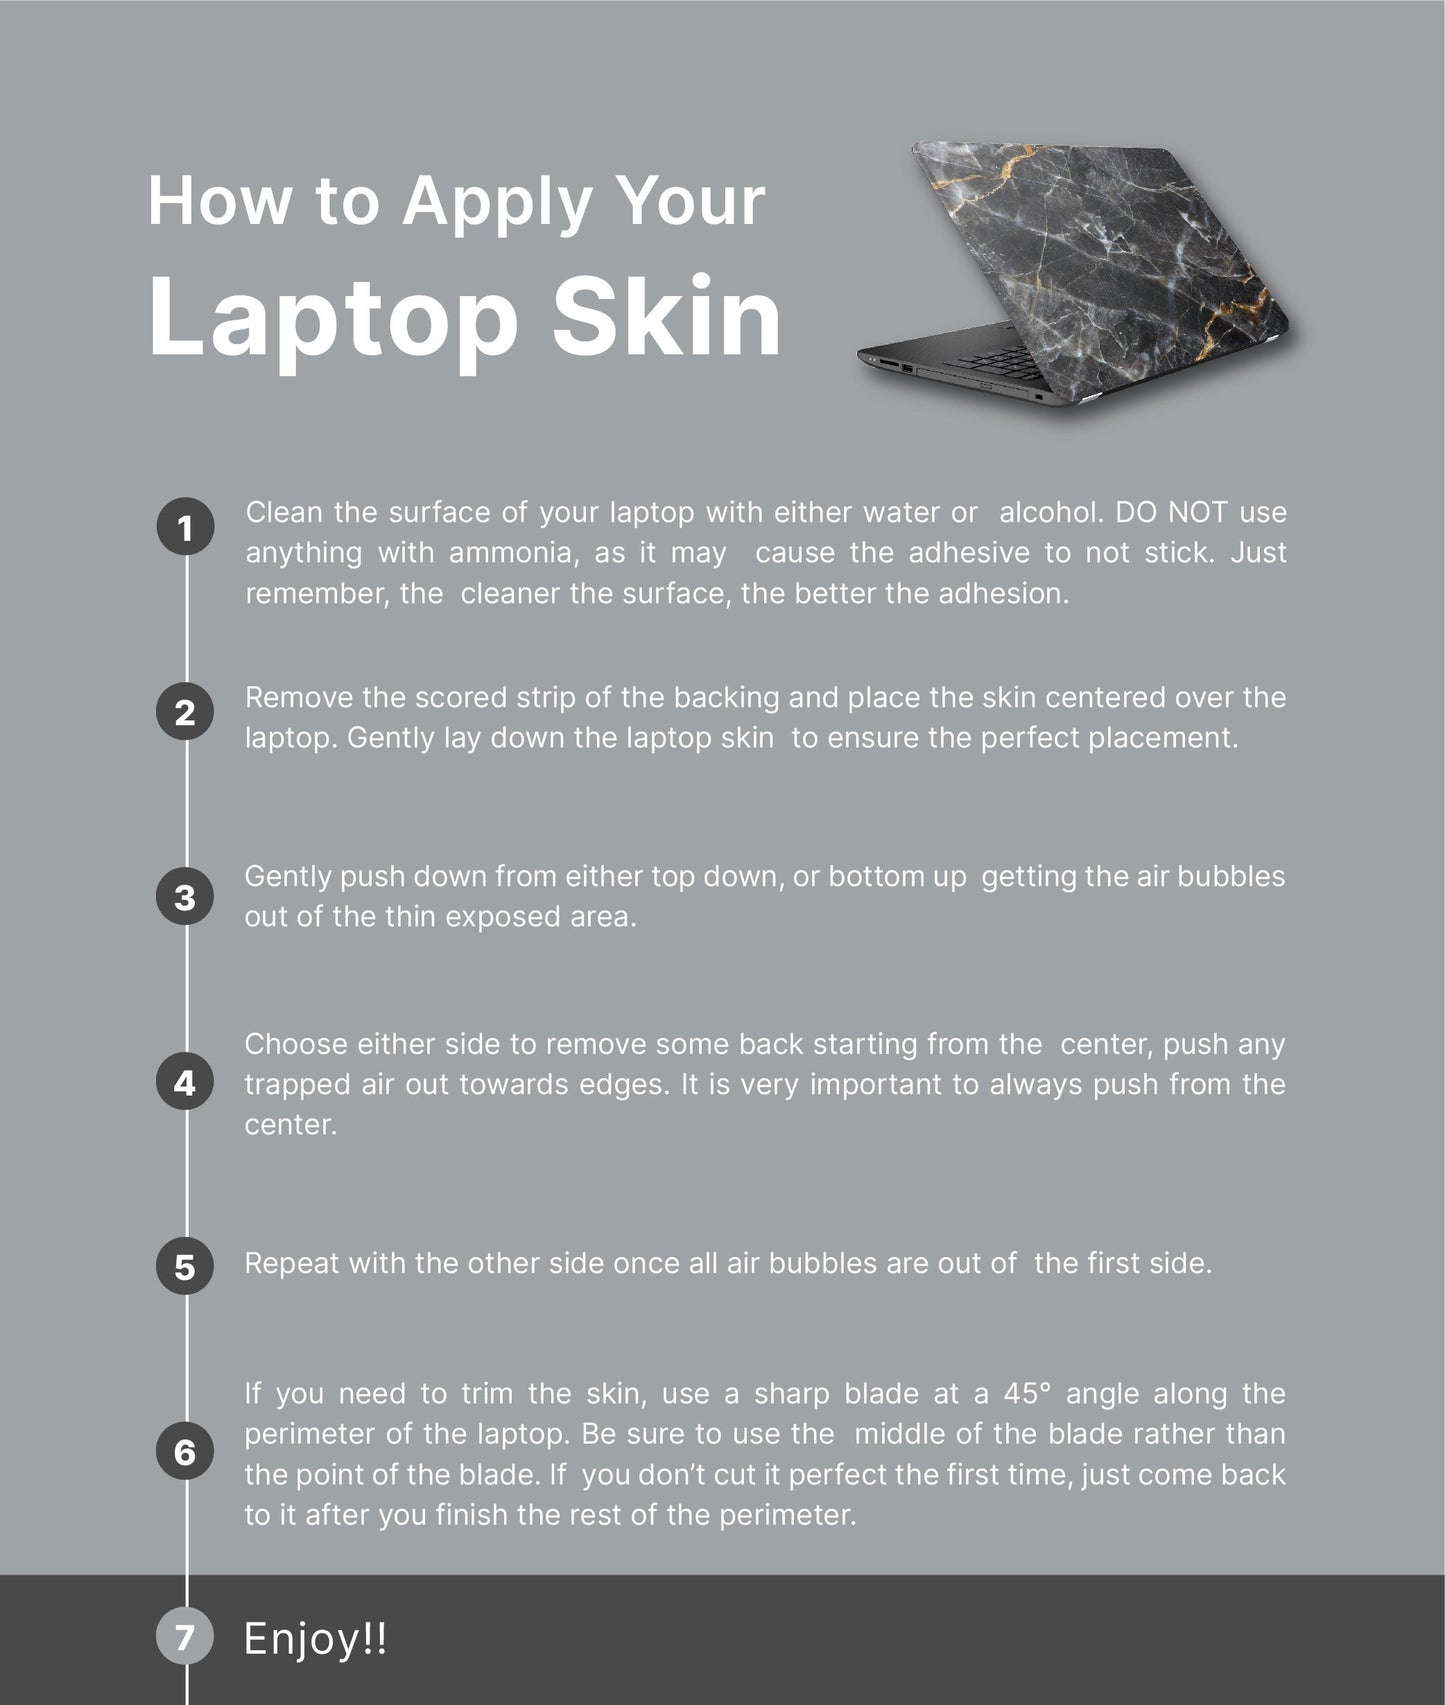 Mountain Trees Laptop Skin, Laptop Cover, Laptop Skins, Removable Laptop Skins, Laptop Decal, Customized Laptop Skin, Laptop Stickers 369